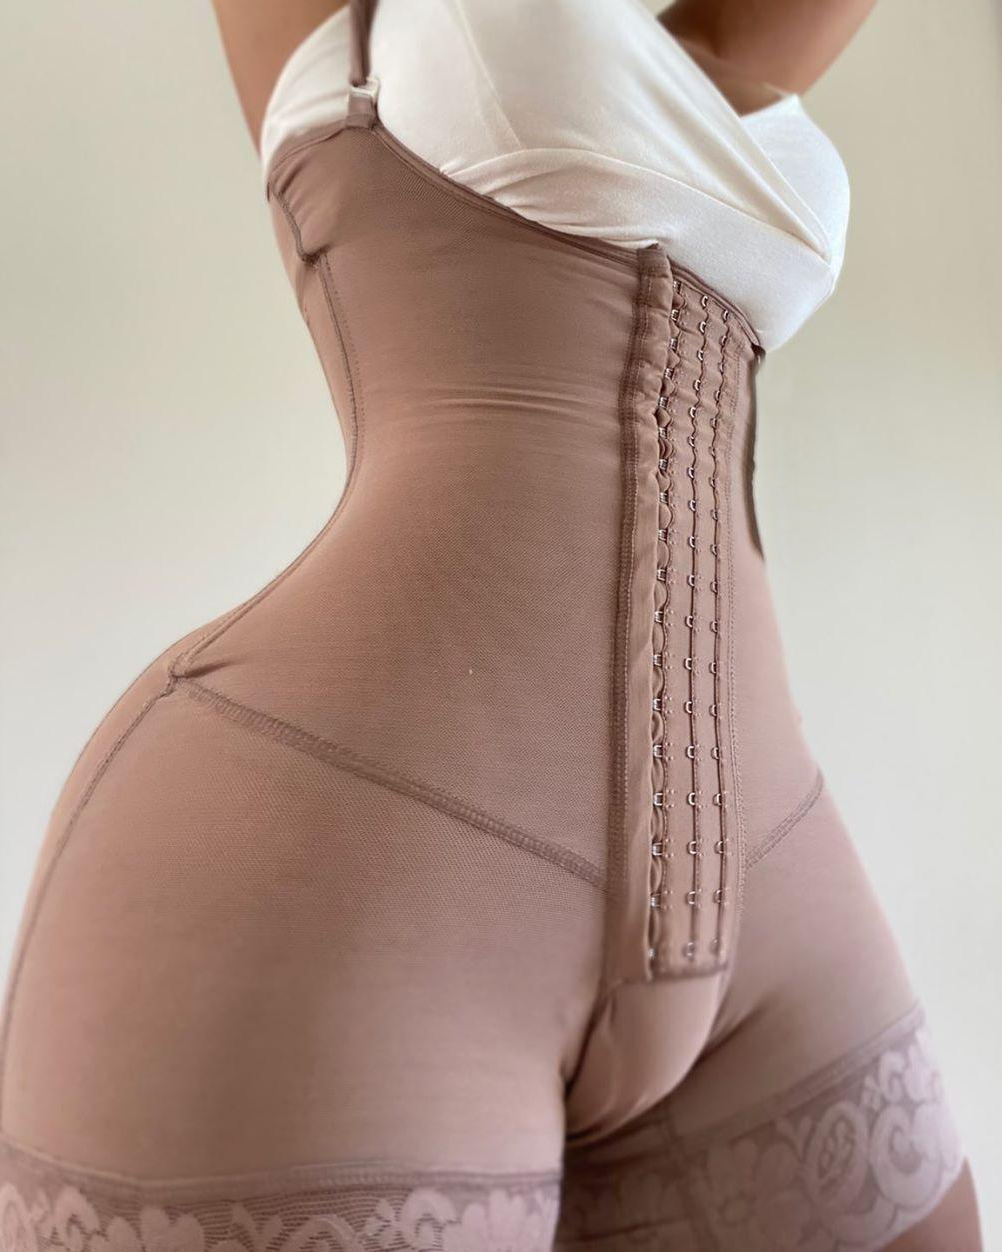 Shapewear For Women Tummy Control Fajas Body Shaper Zipper